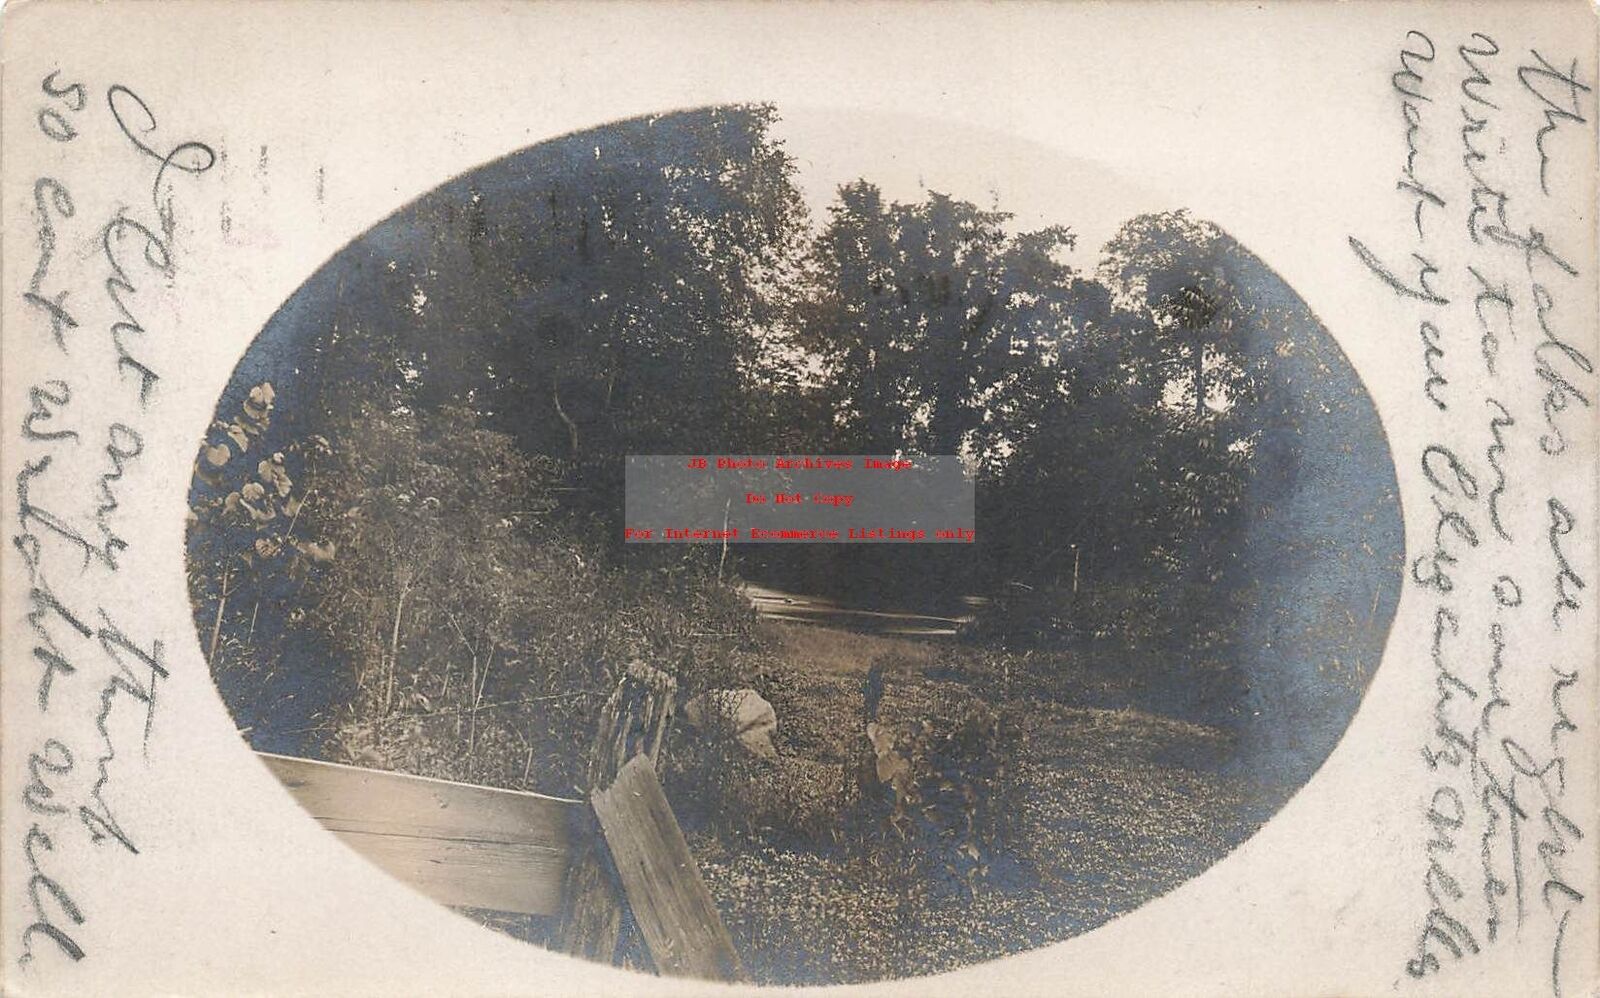 MI, Albion, Michigan, RPPC, Scenic View, 1910 PM, Photo